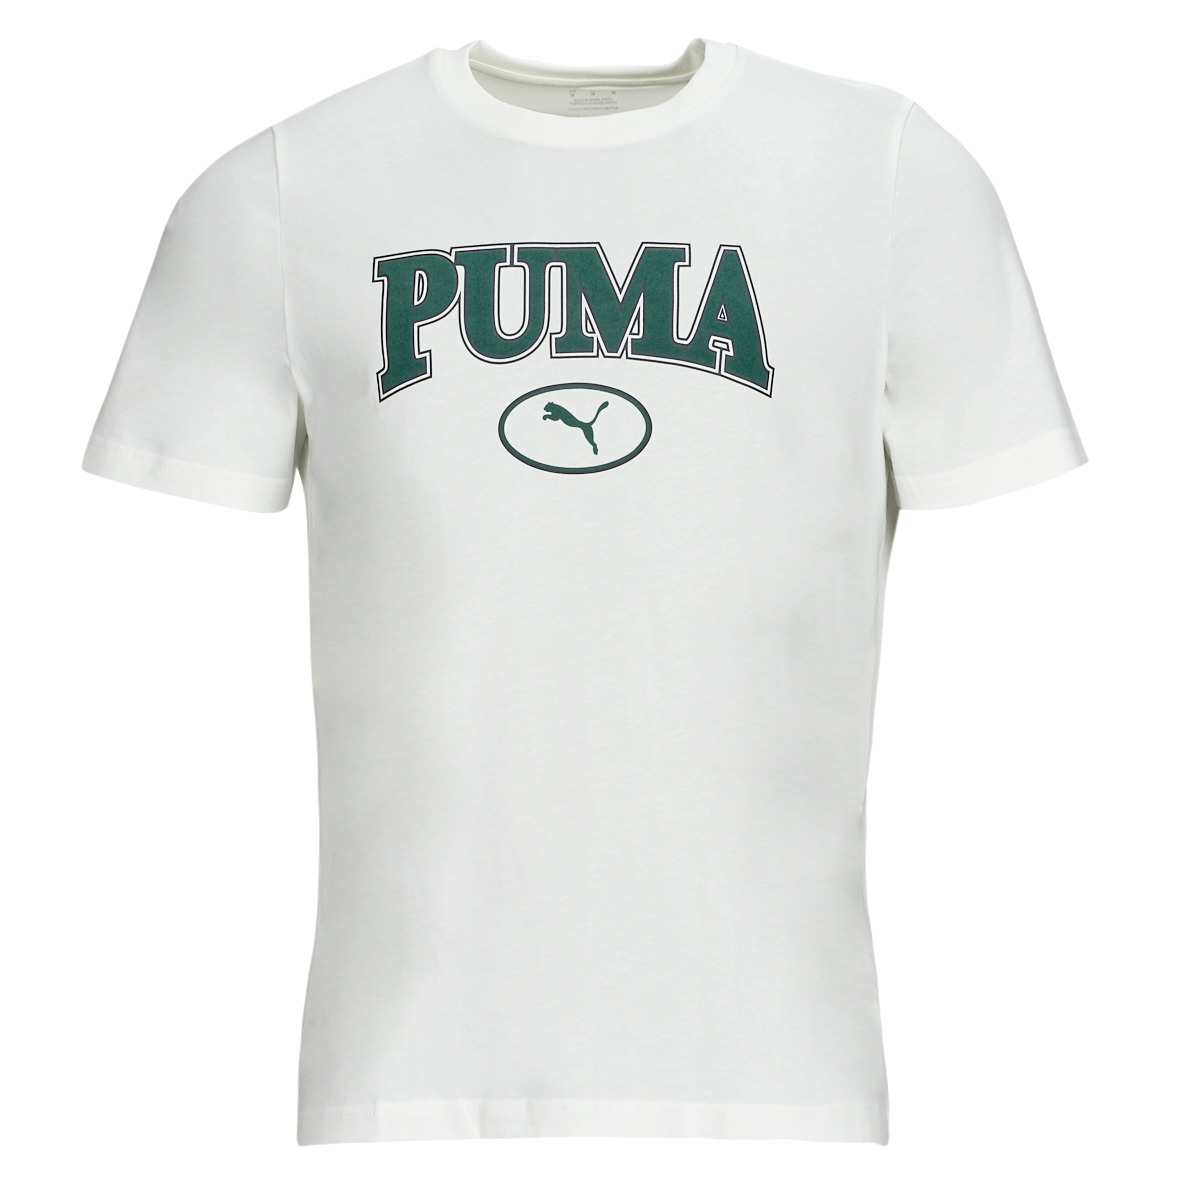 Abbigliamento Uomo T-shirt maniche corte Puma PUMA SQUAD TEE 